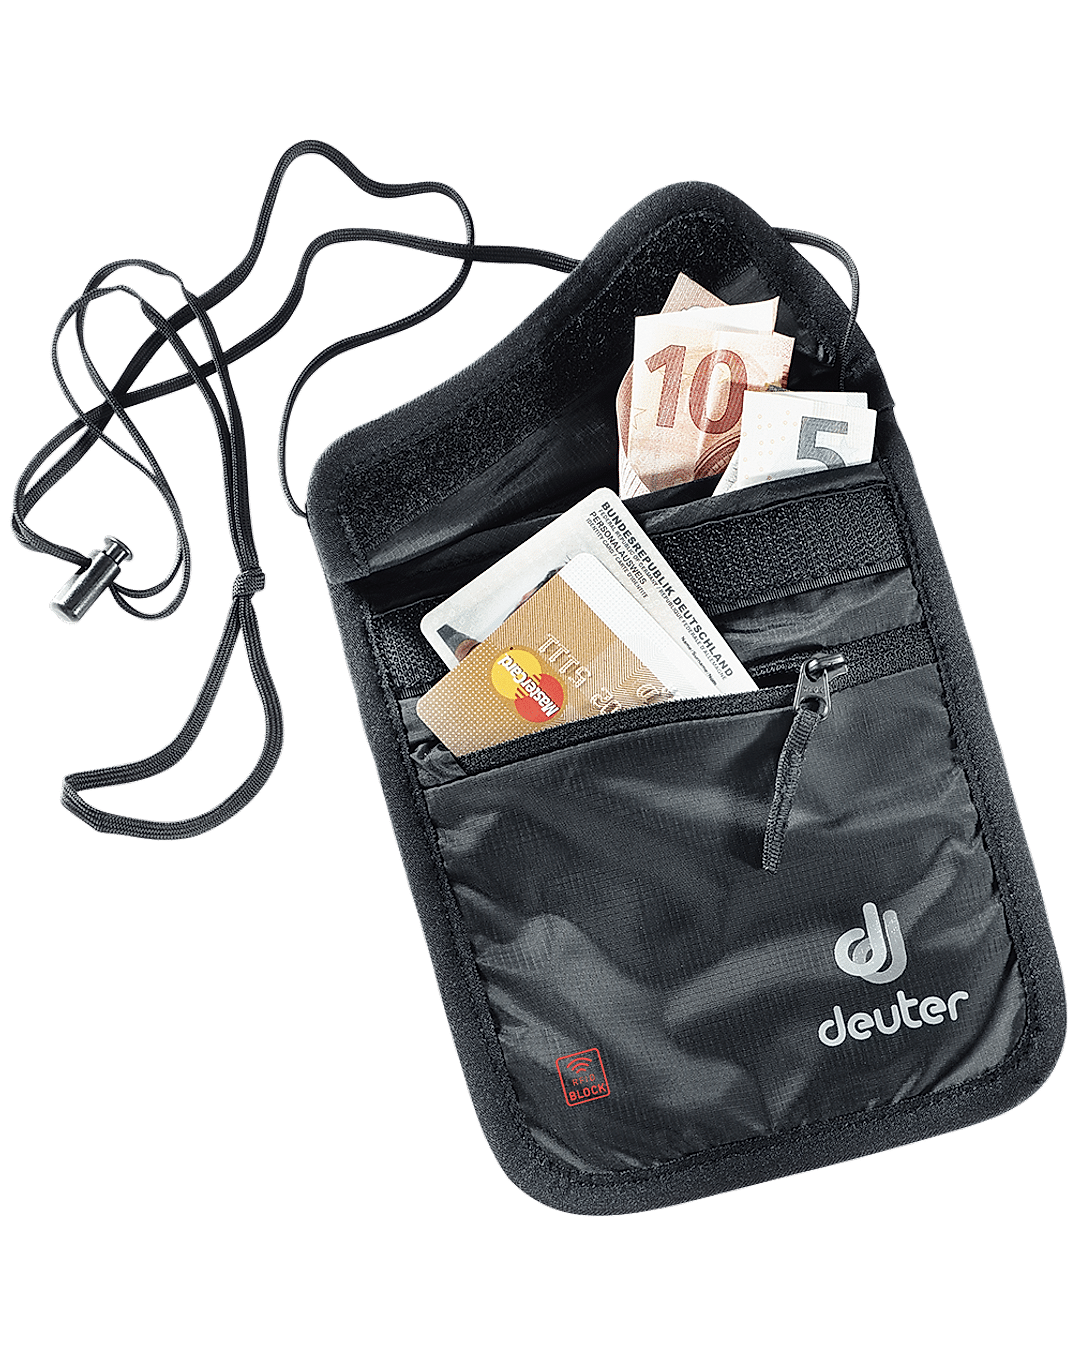 Deuter Unisex Black Security Wallet II RFID BLOCK